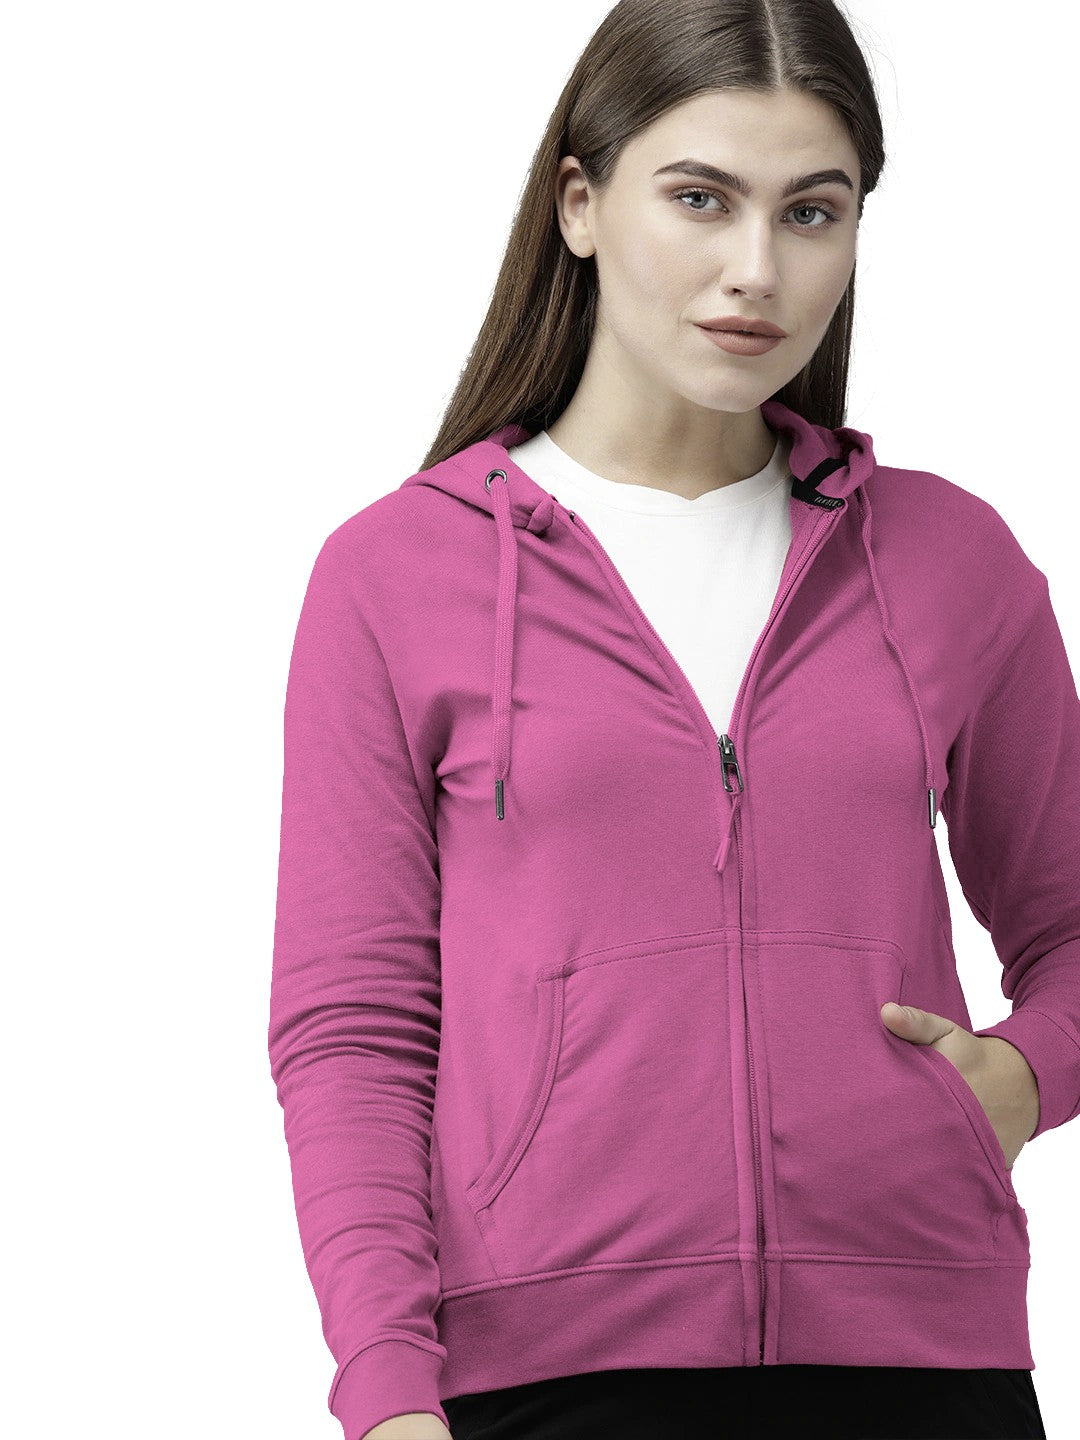 Hot Pink Colour Premium Zip Hoodie For Women's